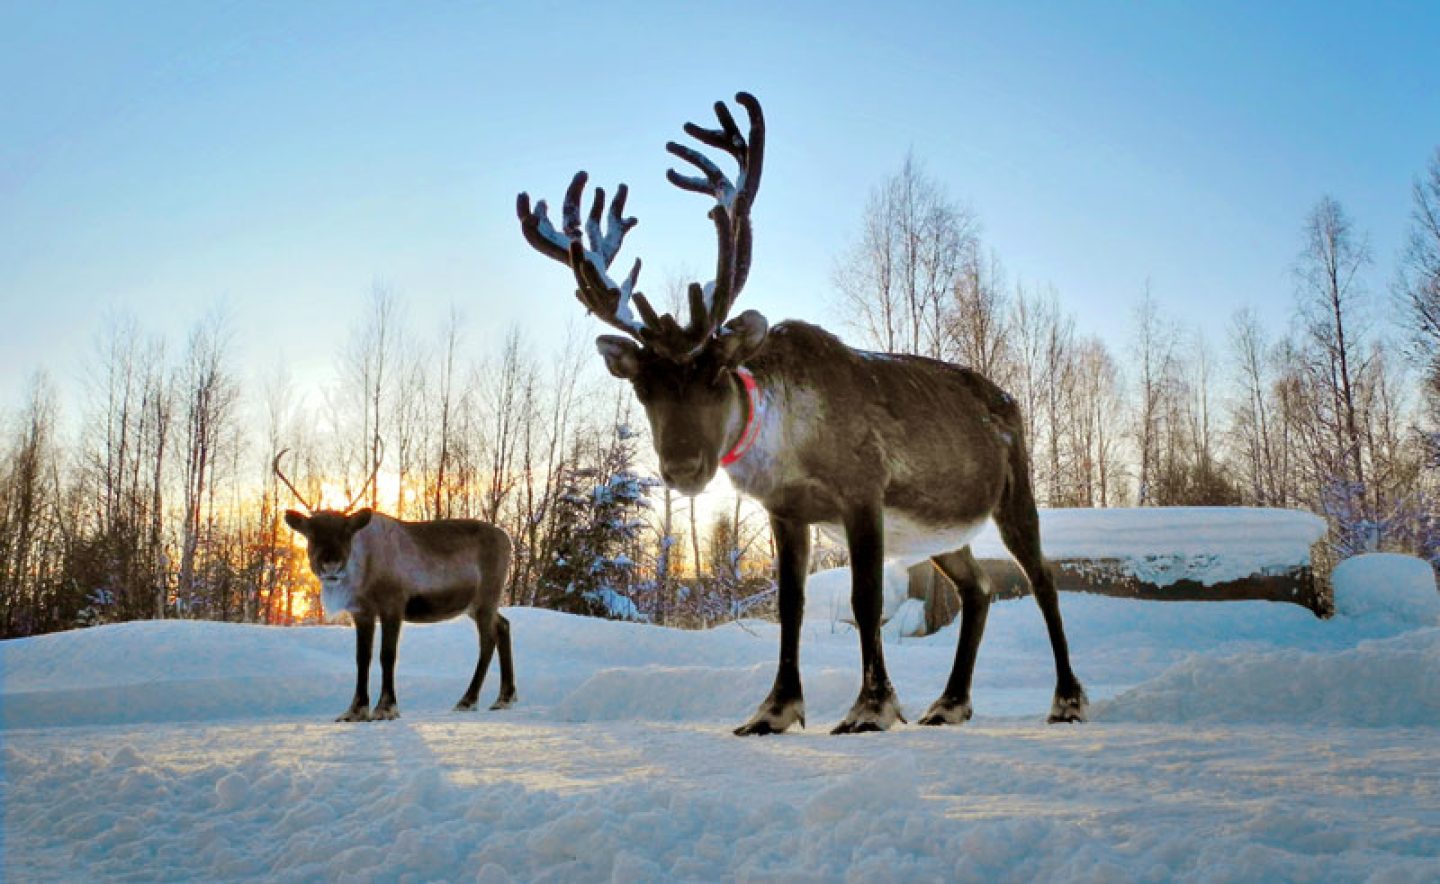 swedish lapland reindeer in winter istock